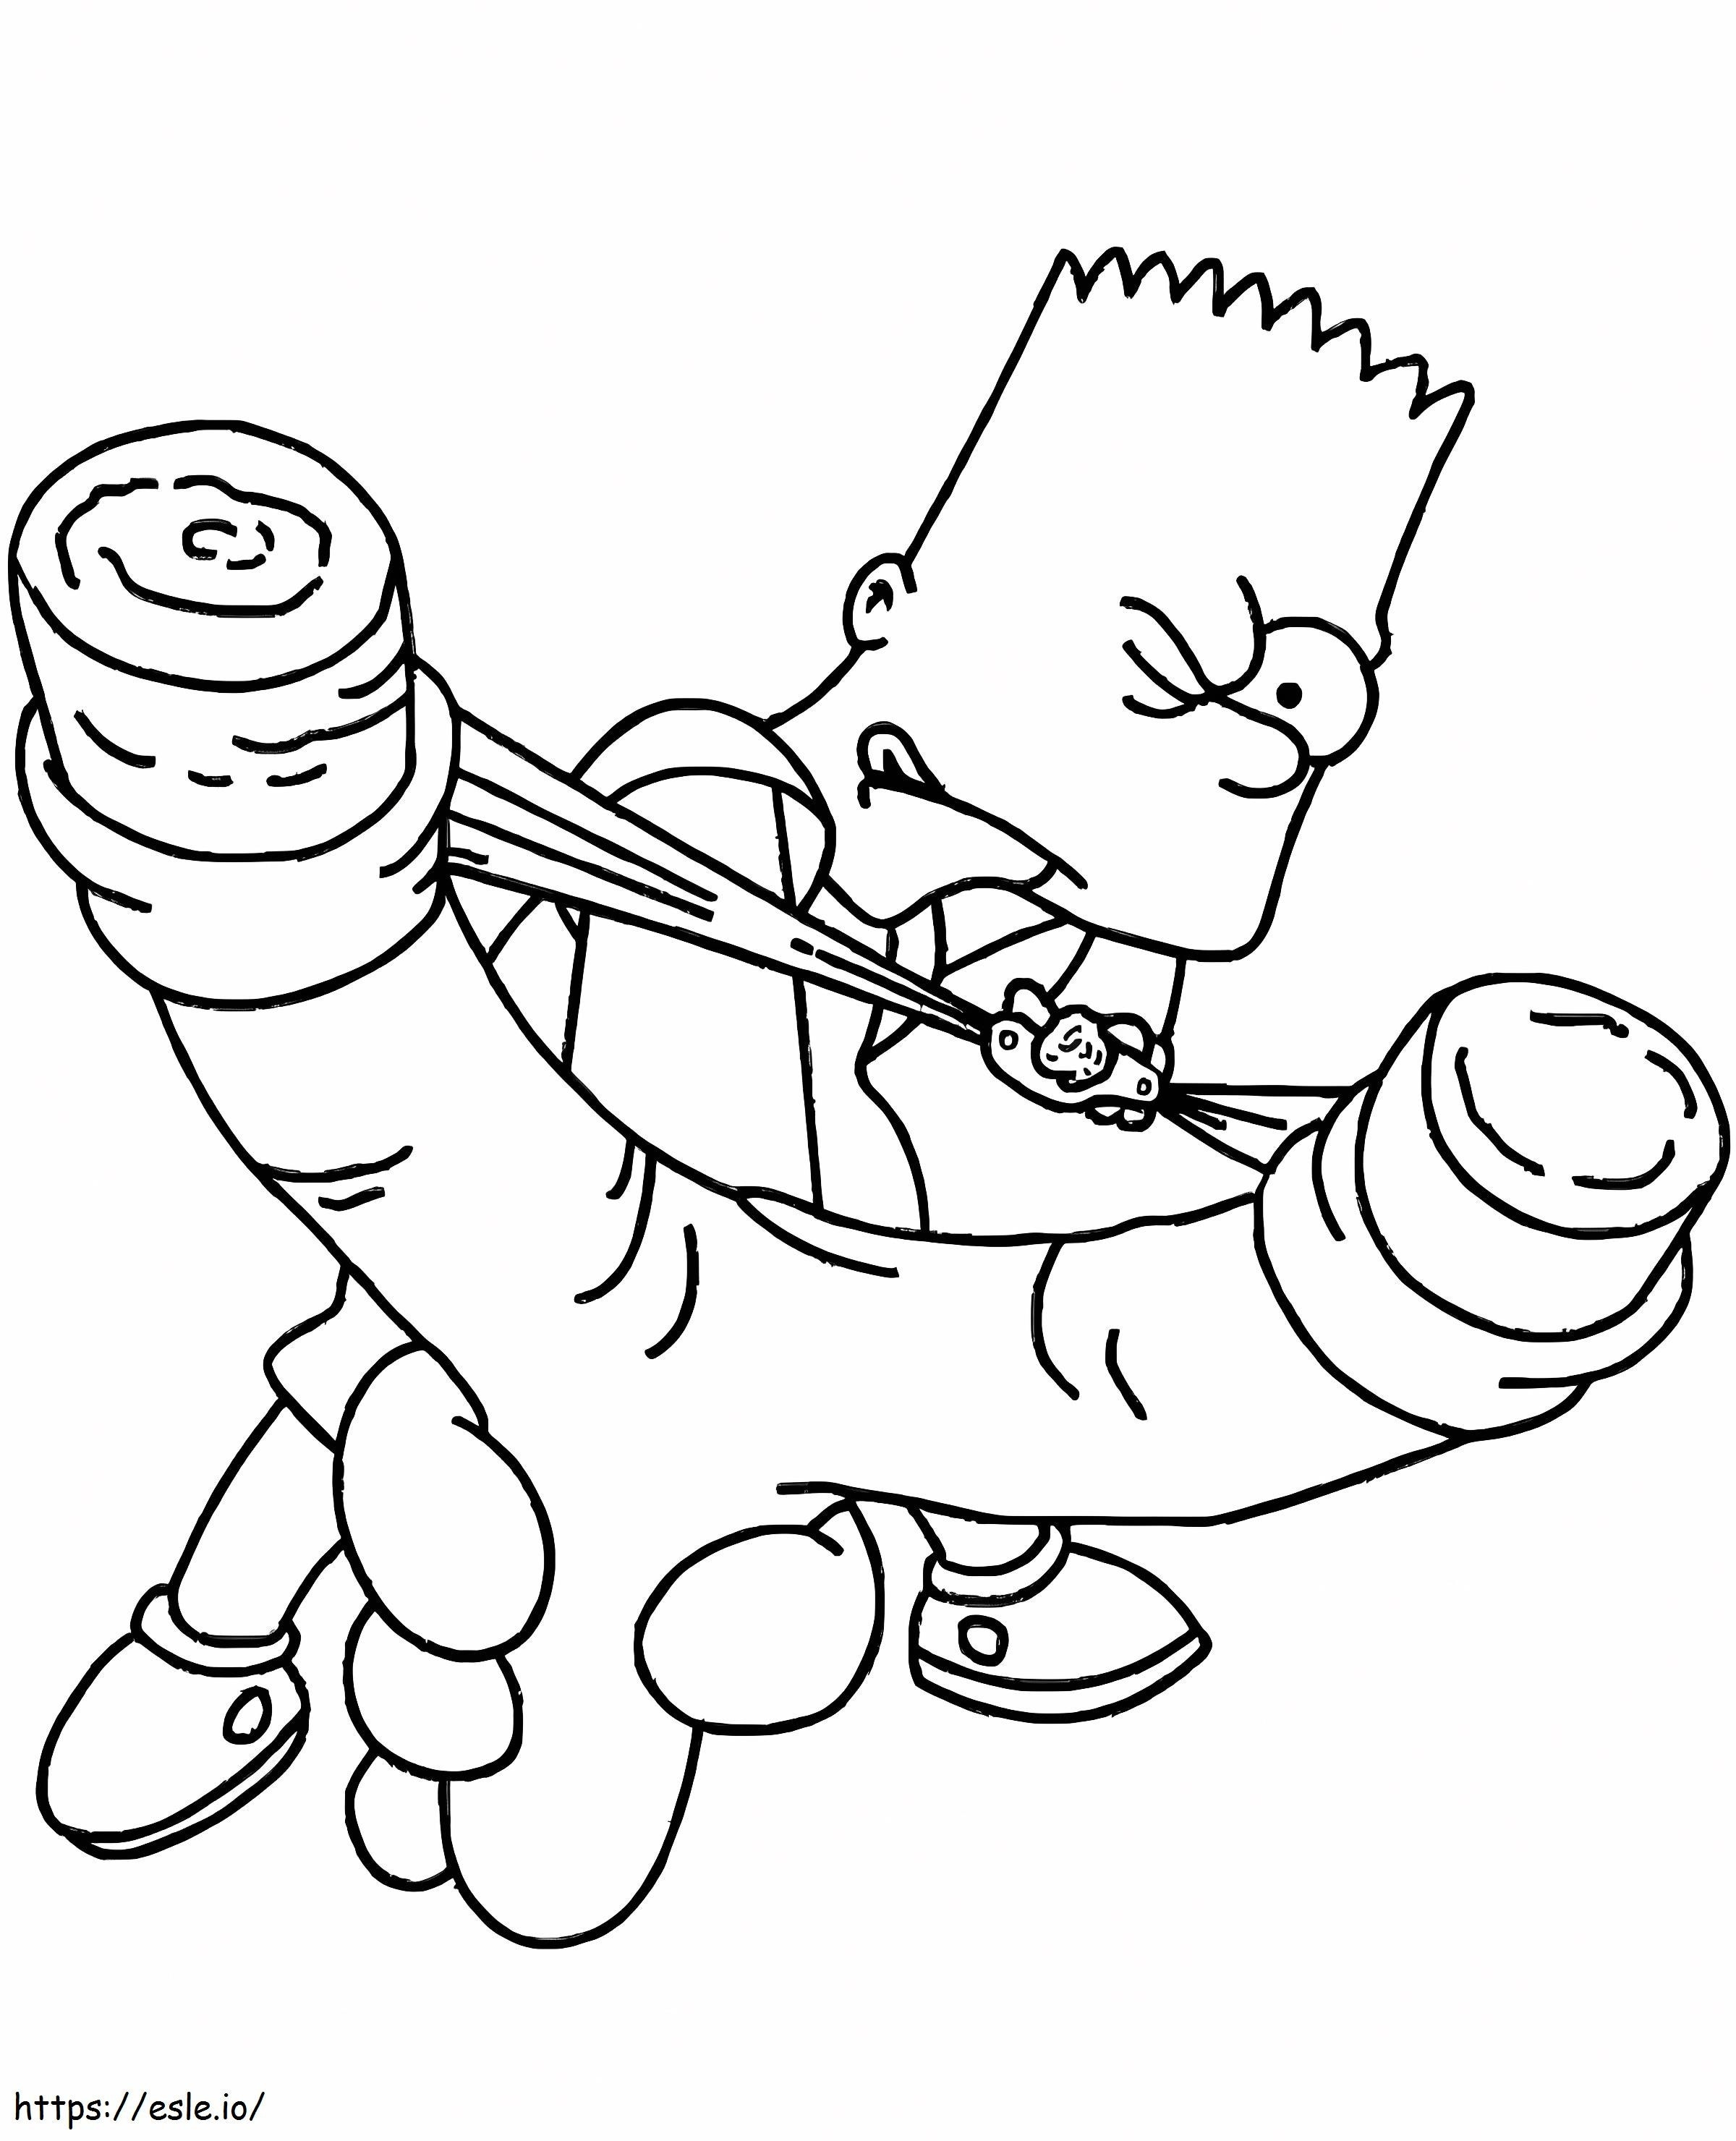 Bart Simpson trage cu o arbaletă de cauciuc de colorat